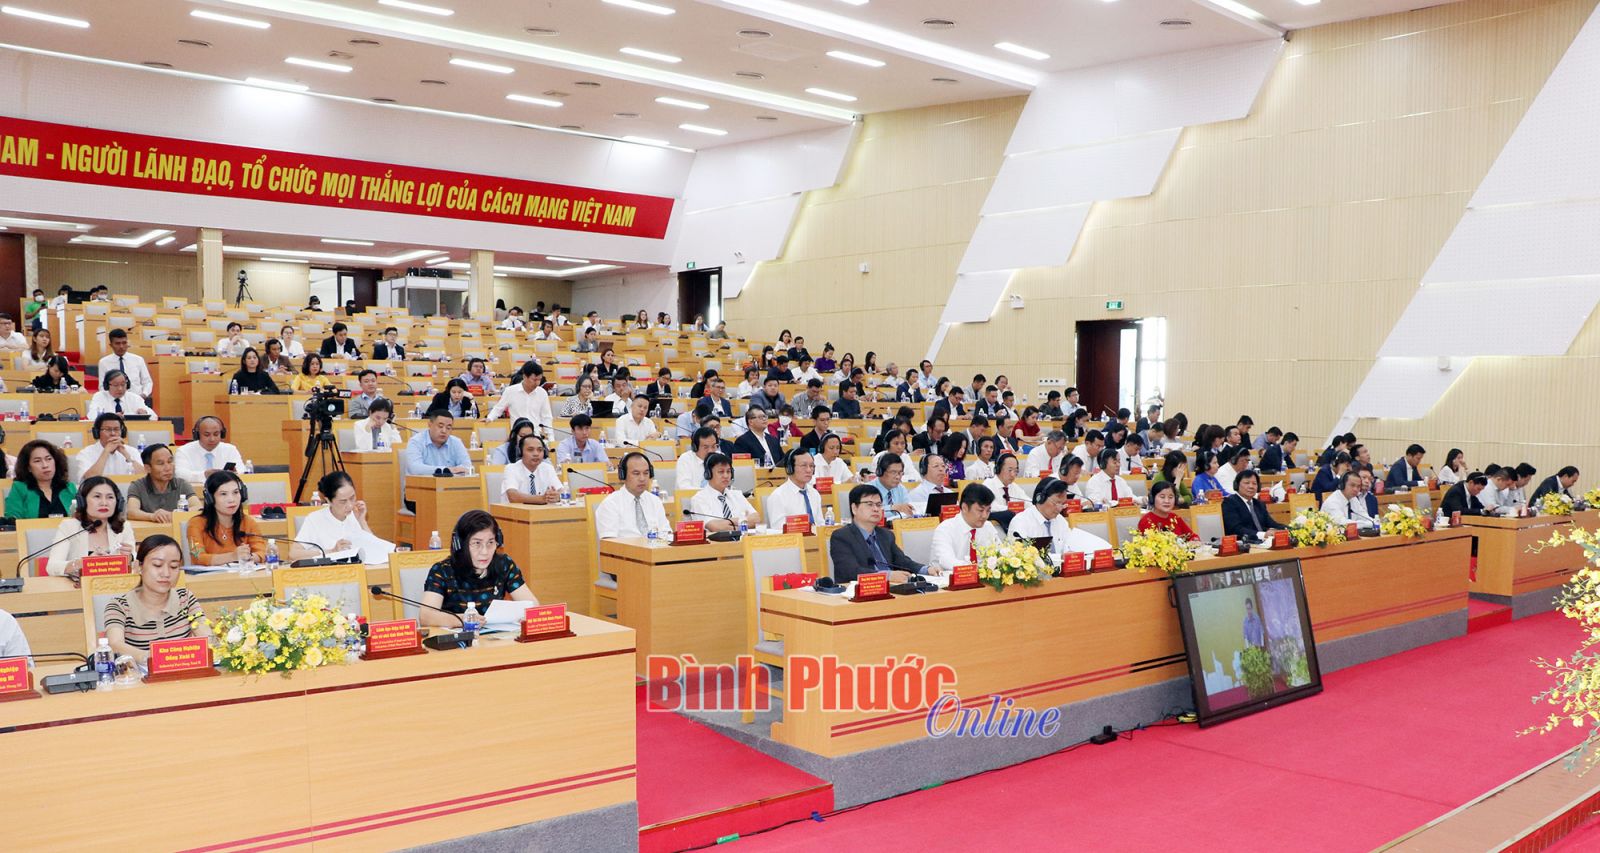 Hội nghị xúc tiến đầu tư giữa tỉnh Bình Phước với các nhà đầu tư Singapore diễn ra ngày 5/7.